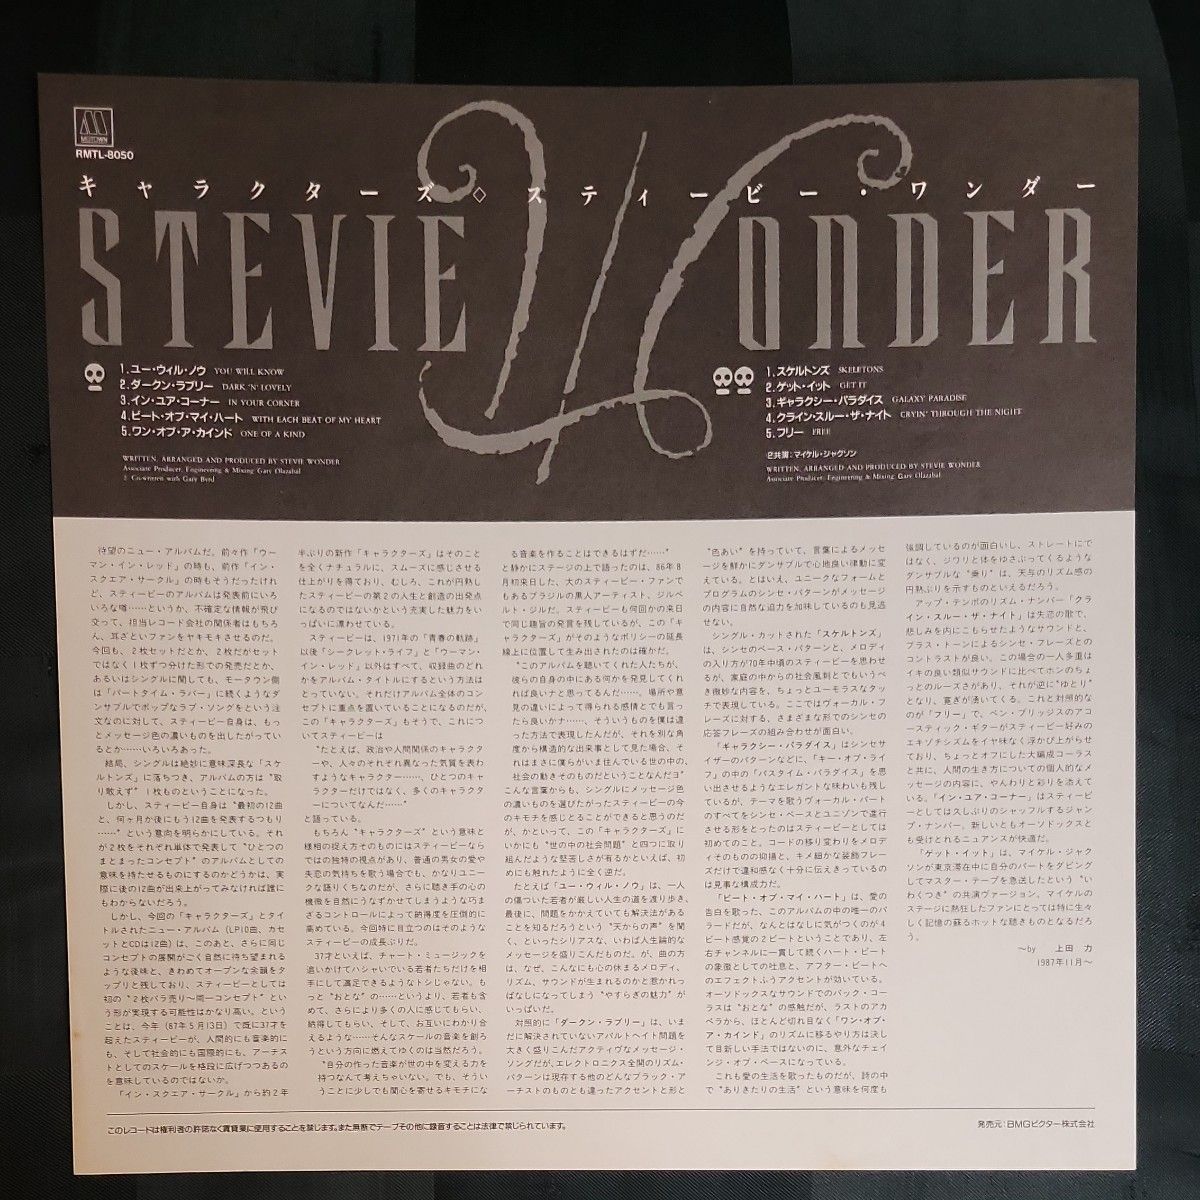 キャラクターズ / スティービー・ワンダー (LPレコード)